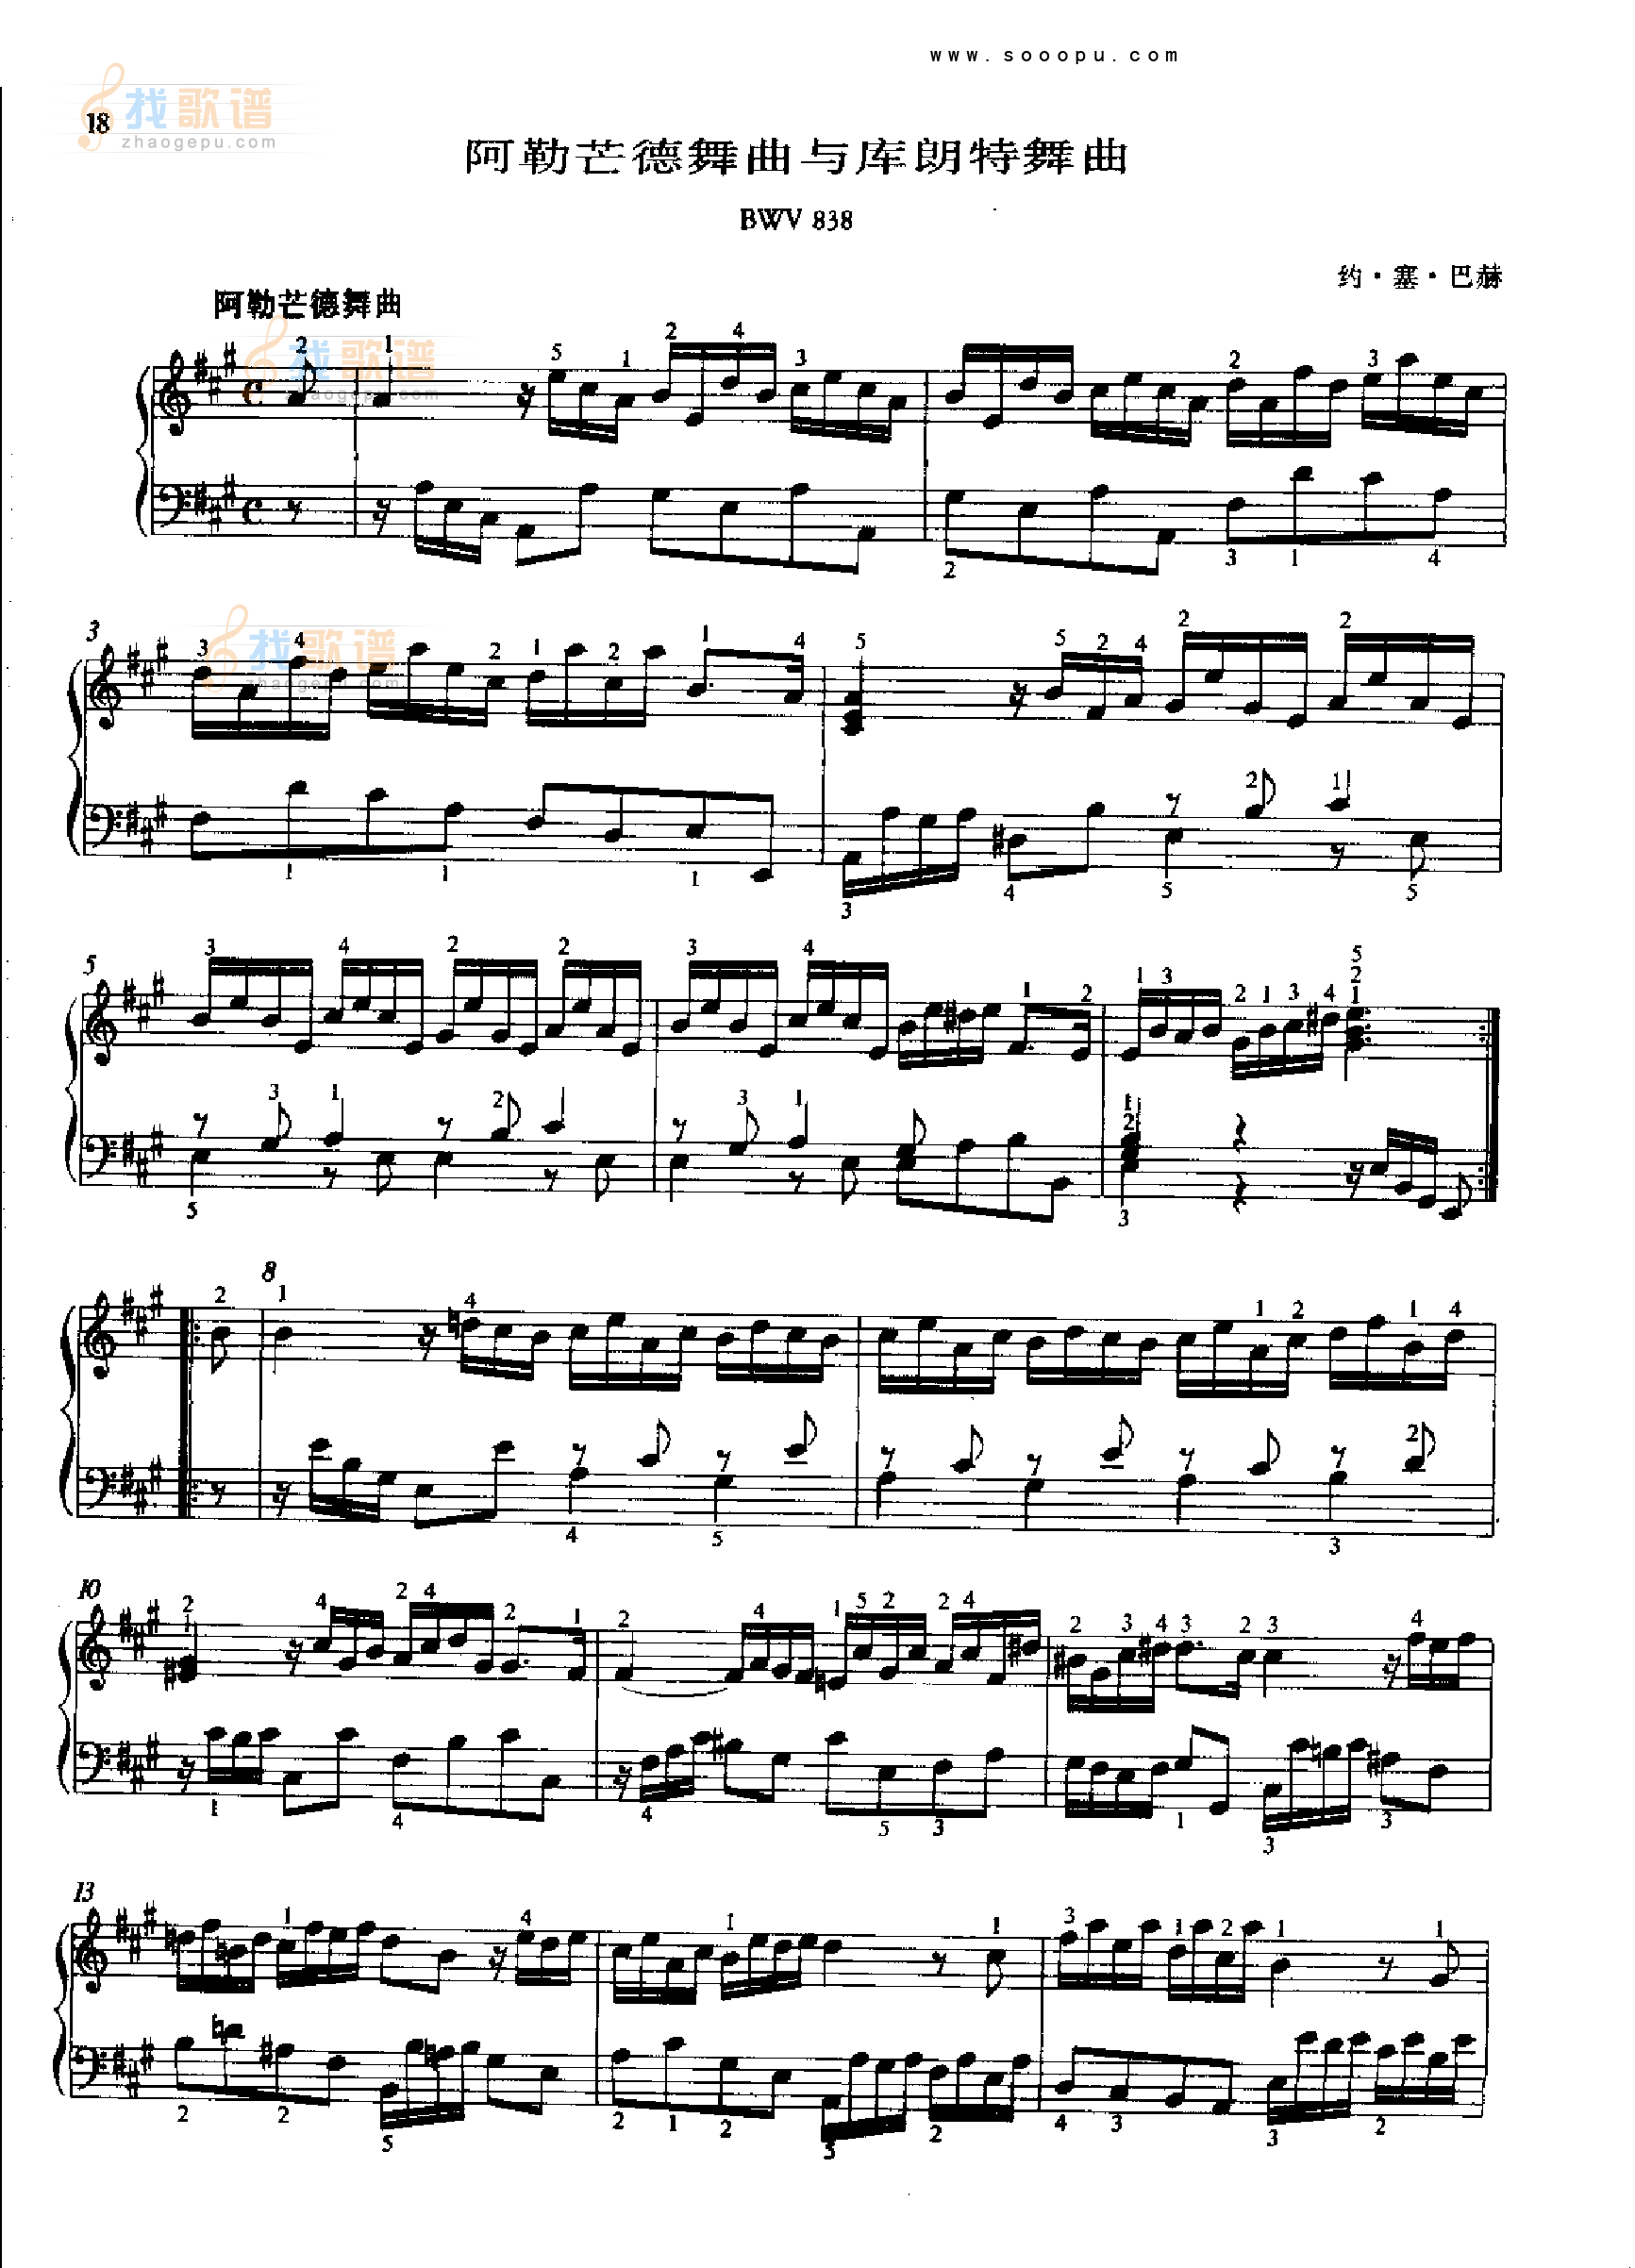 阿勒芒德舞曲与库朗特舞曲BWV838 